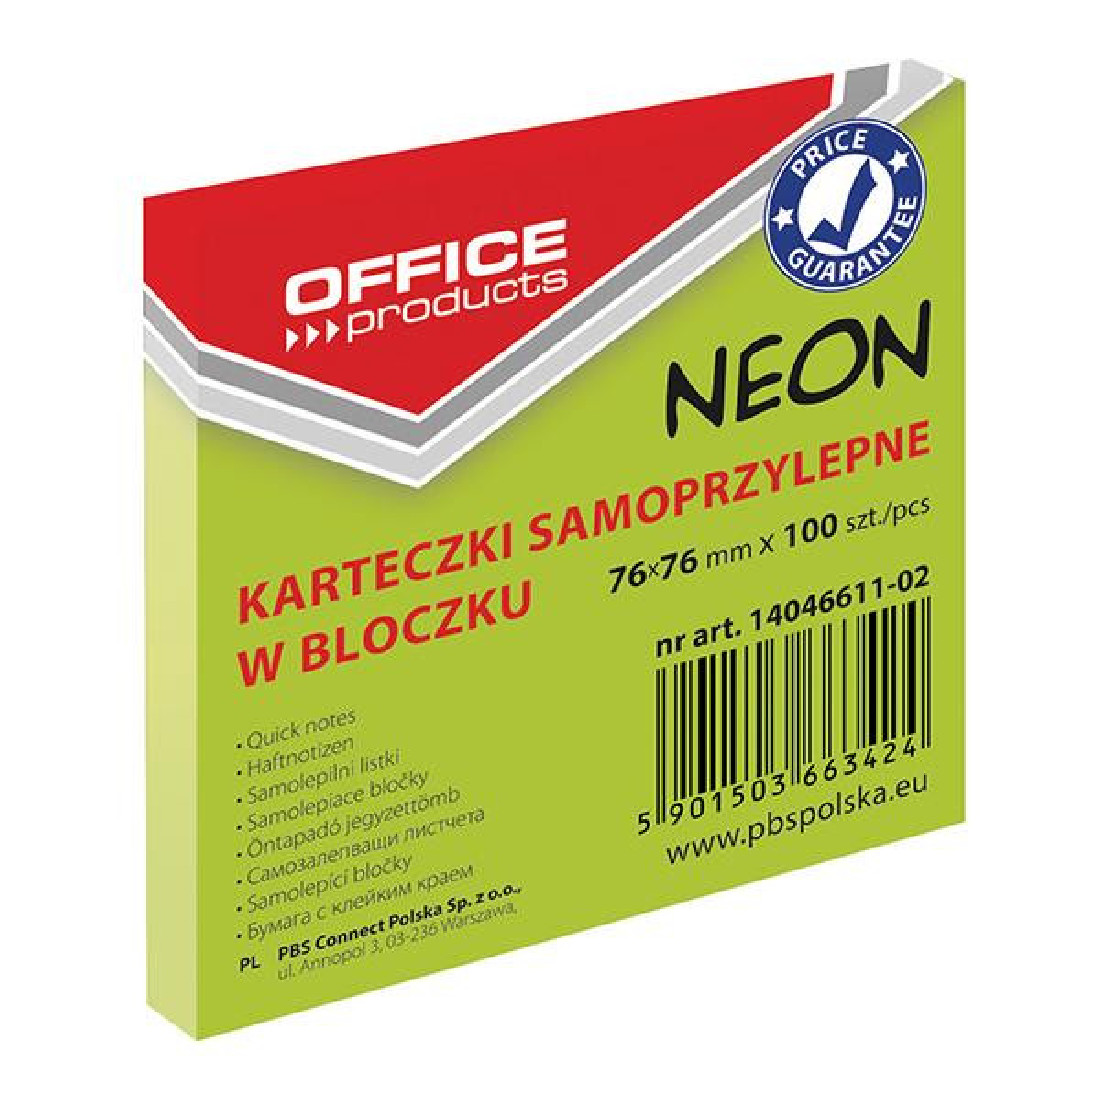 Xαρτάκια Σημειώσεων Αυτοκόλλητα Κύβος Πράσινο Neon 14046611-02 Οffice